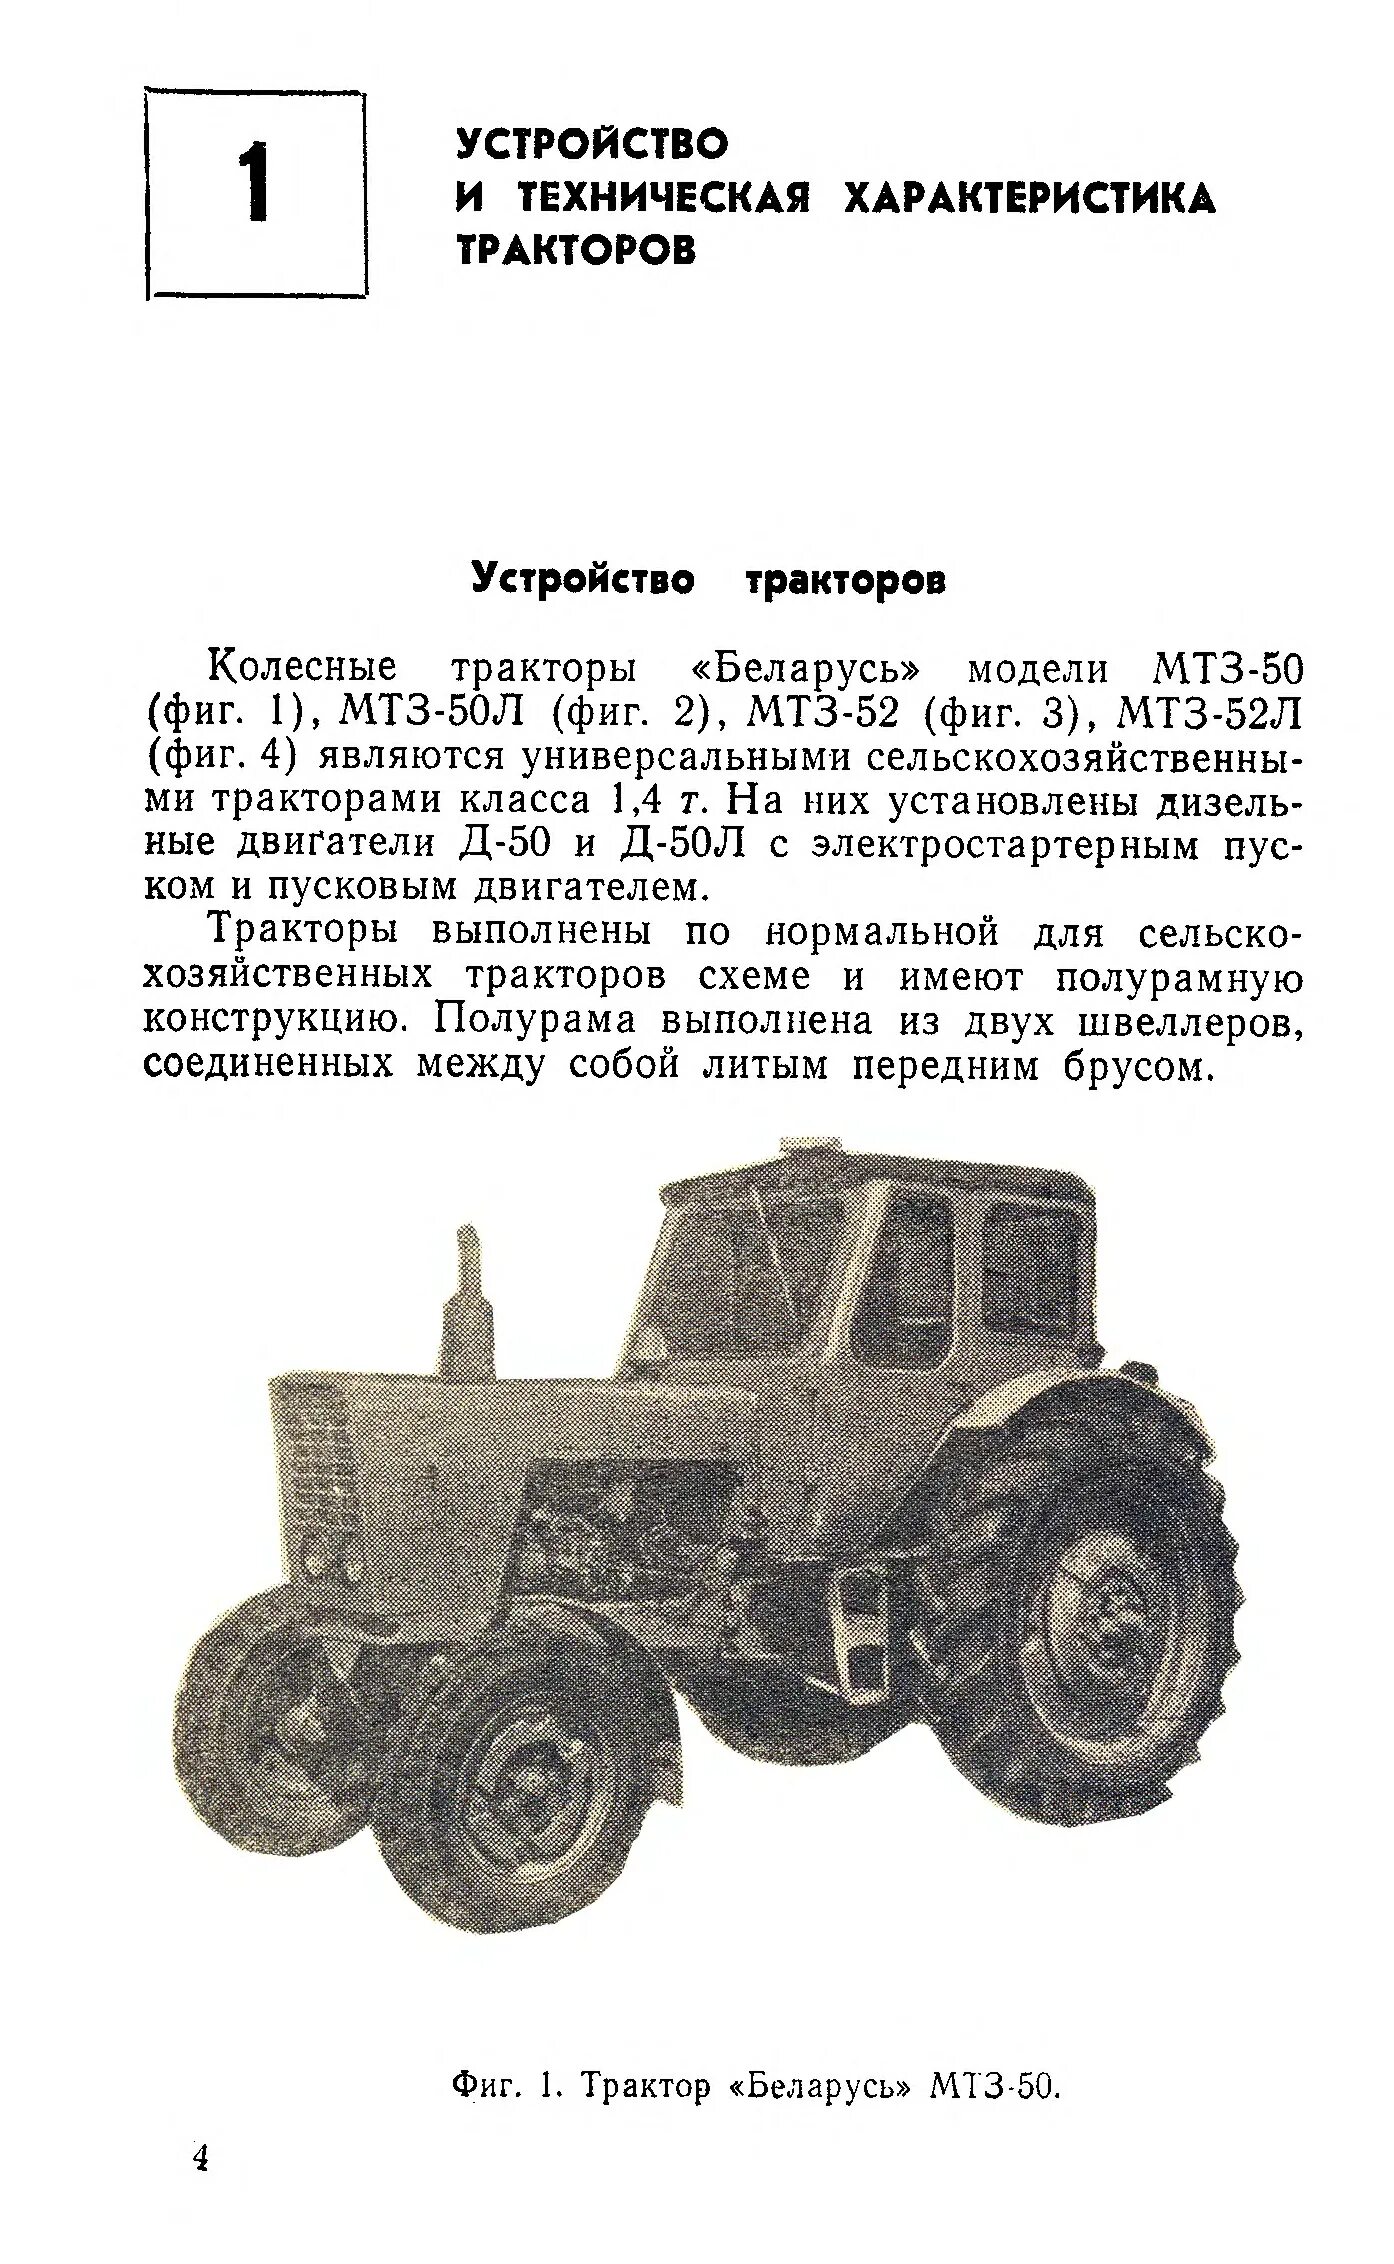 Трактор МТЗ 80 Беларус технические характеристики. МТЗ-50 трактор характеристики. Параметры трактора МТЗ 50. Ширина трактора МТЗ 50.